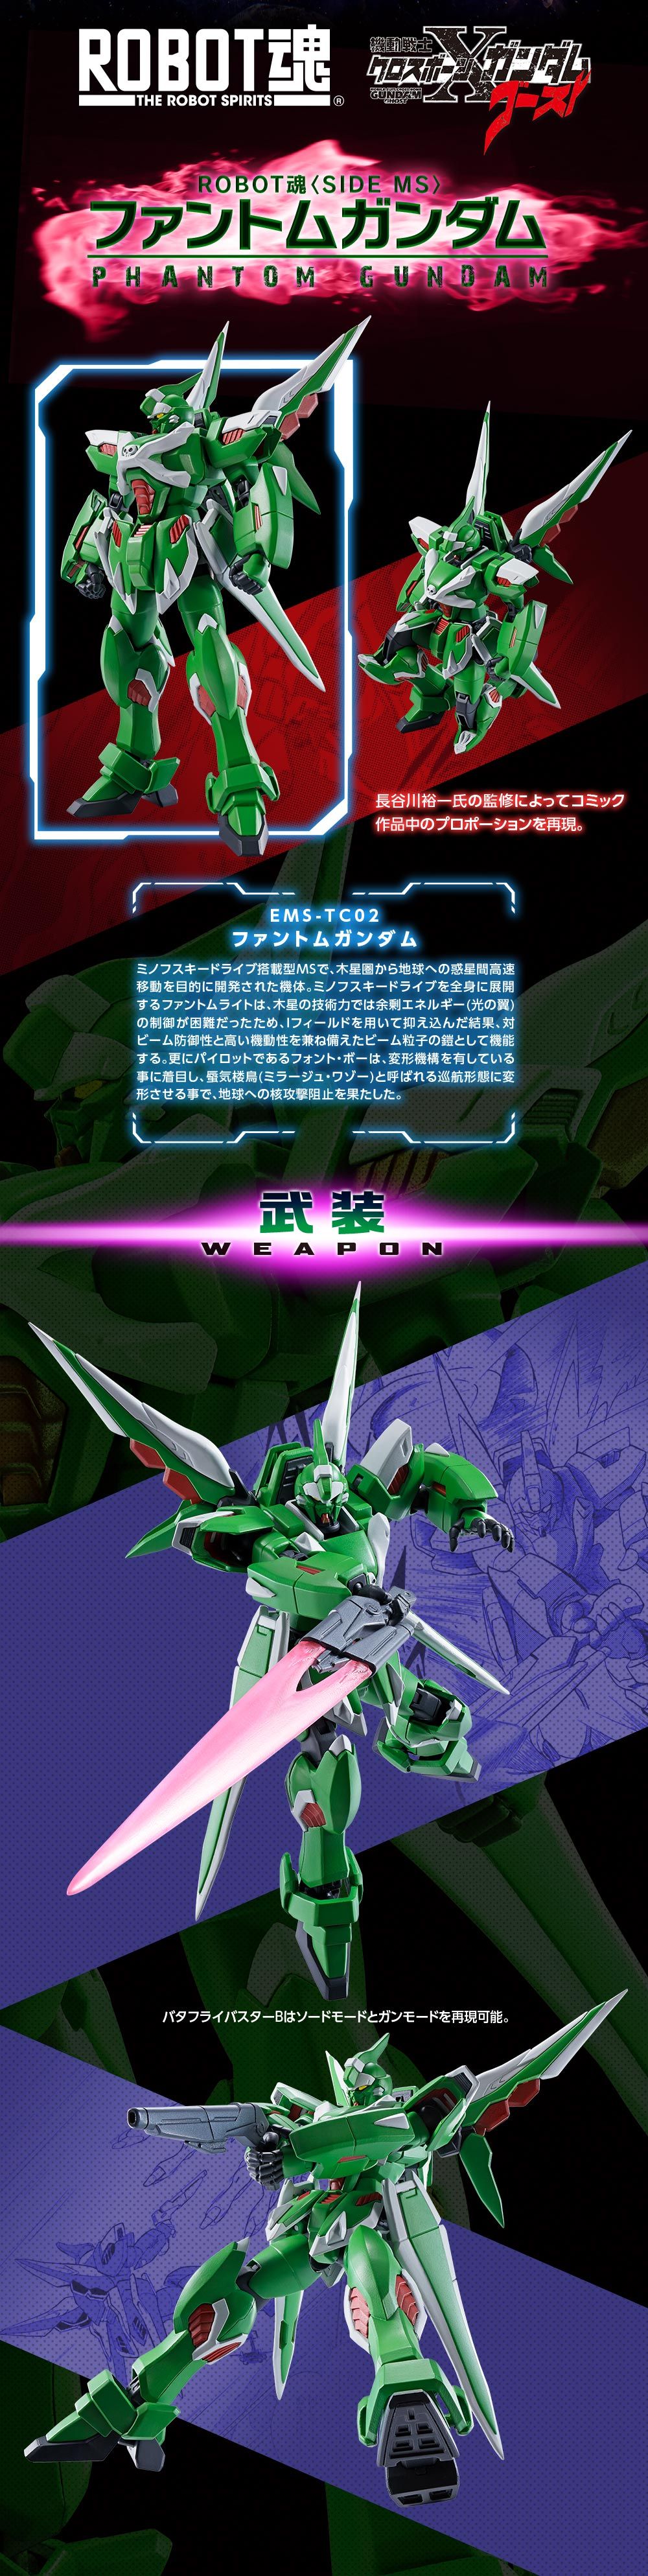 Robot Spirits(Side MS) R-SP EMS-TC02 Phantom Gundam